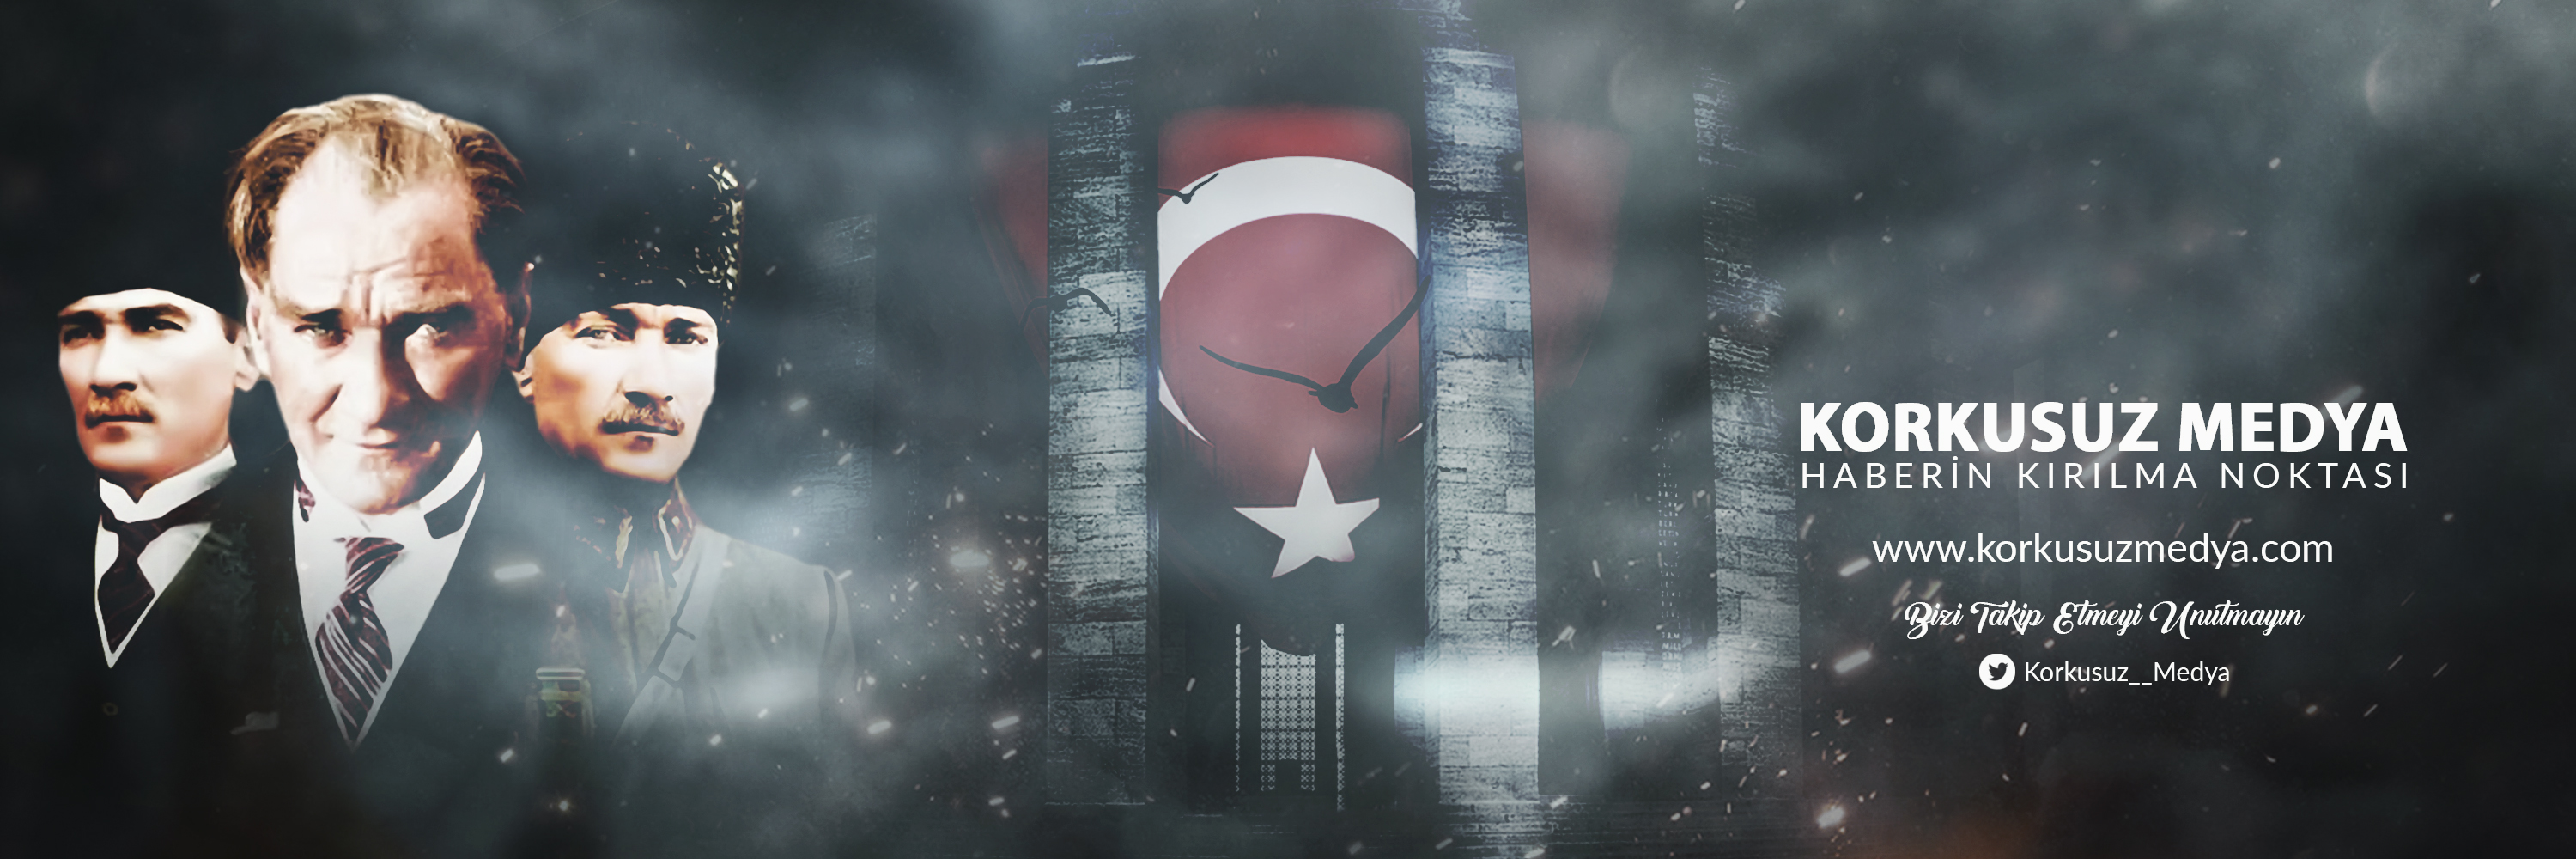 İstanbul'da ürüyor, tüm Türkiye'de görüldü!